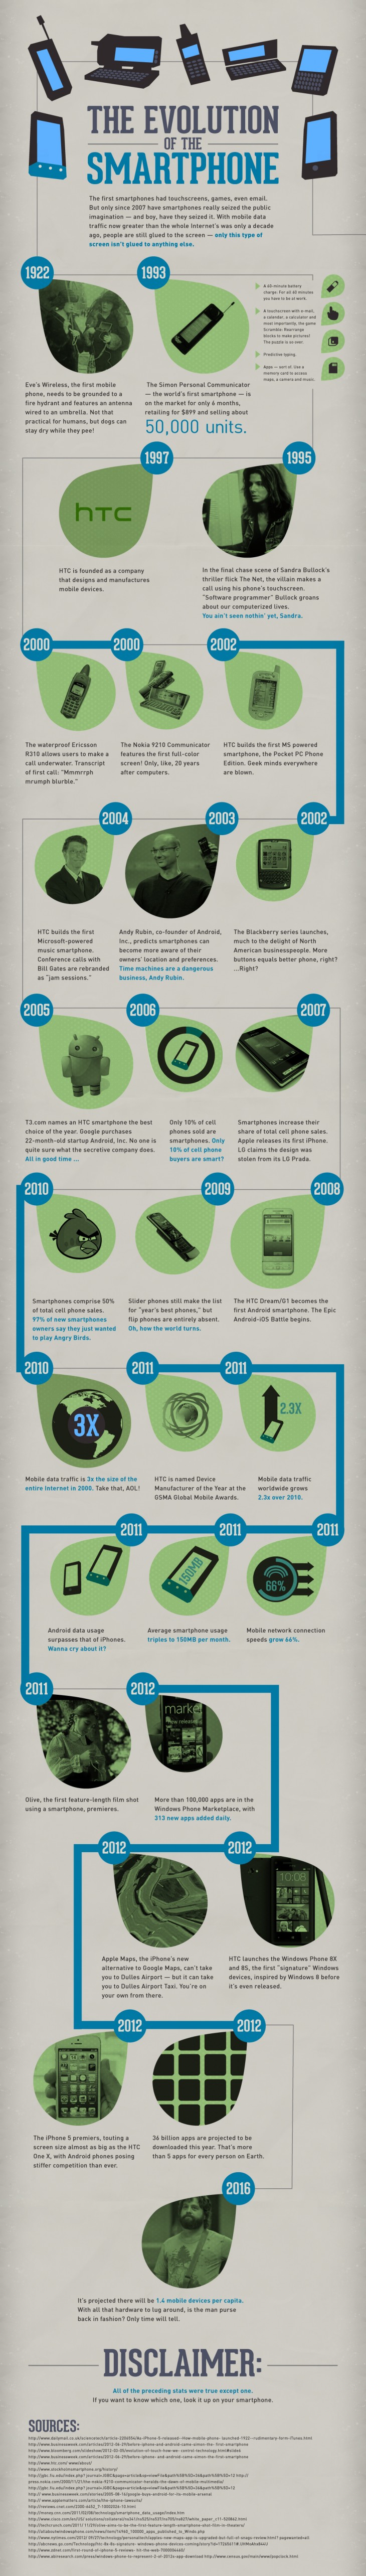 Evolusi Smartphone dari Masa ke Masa